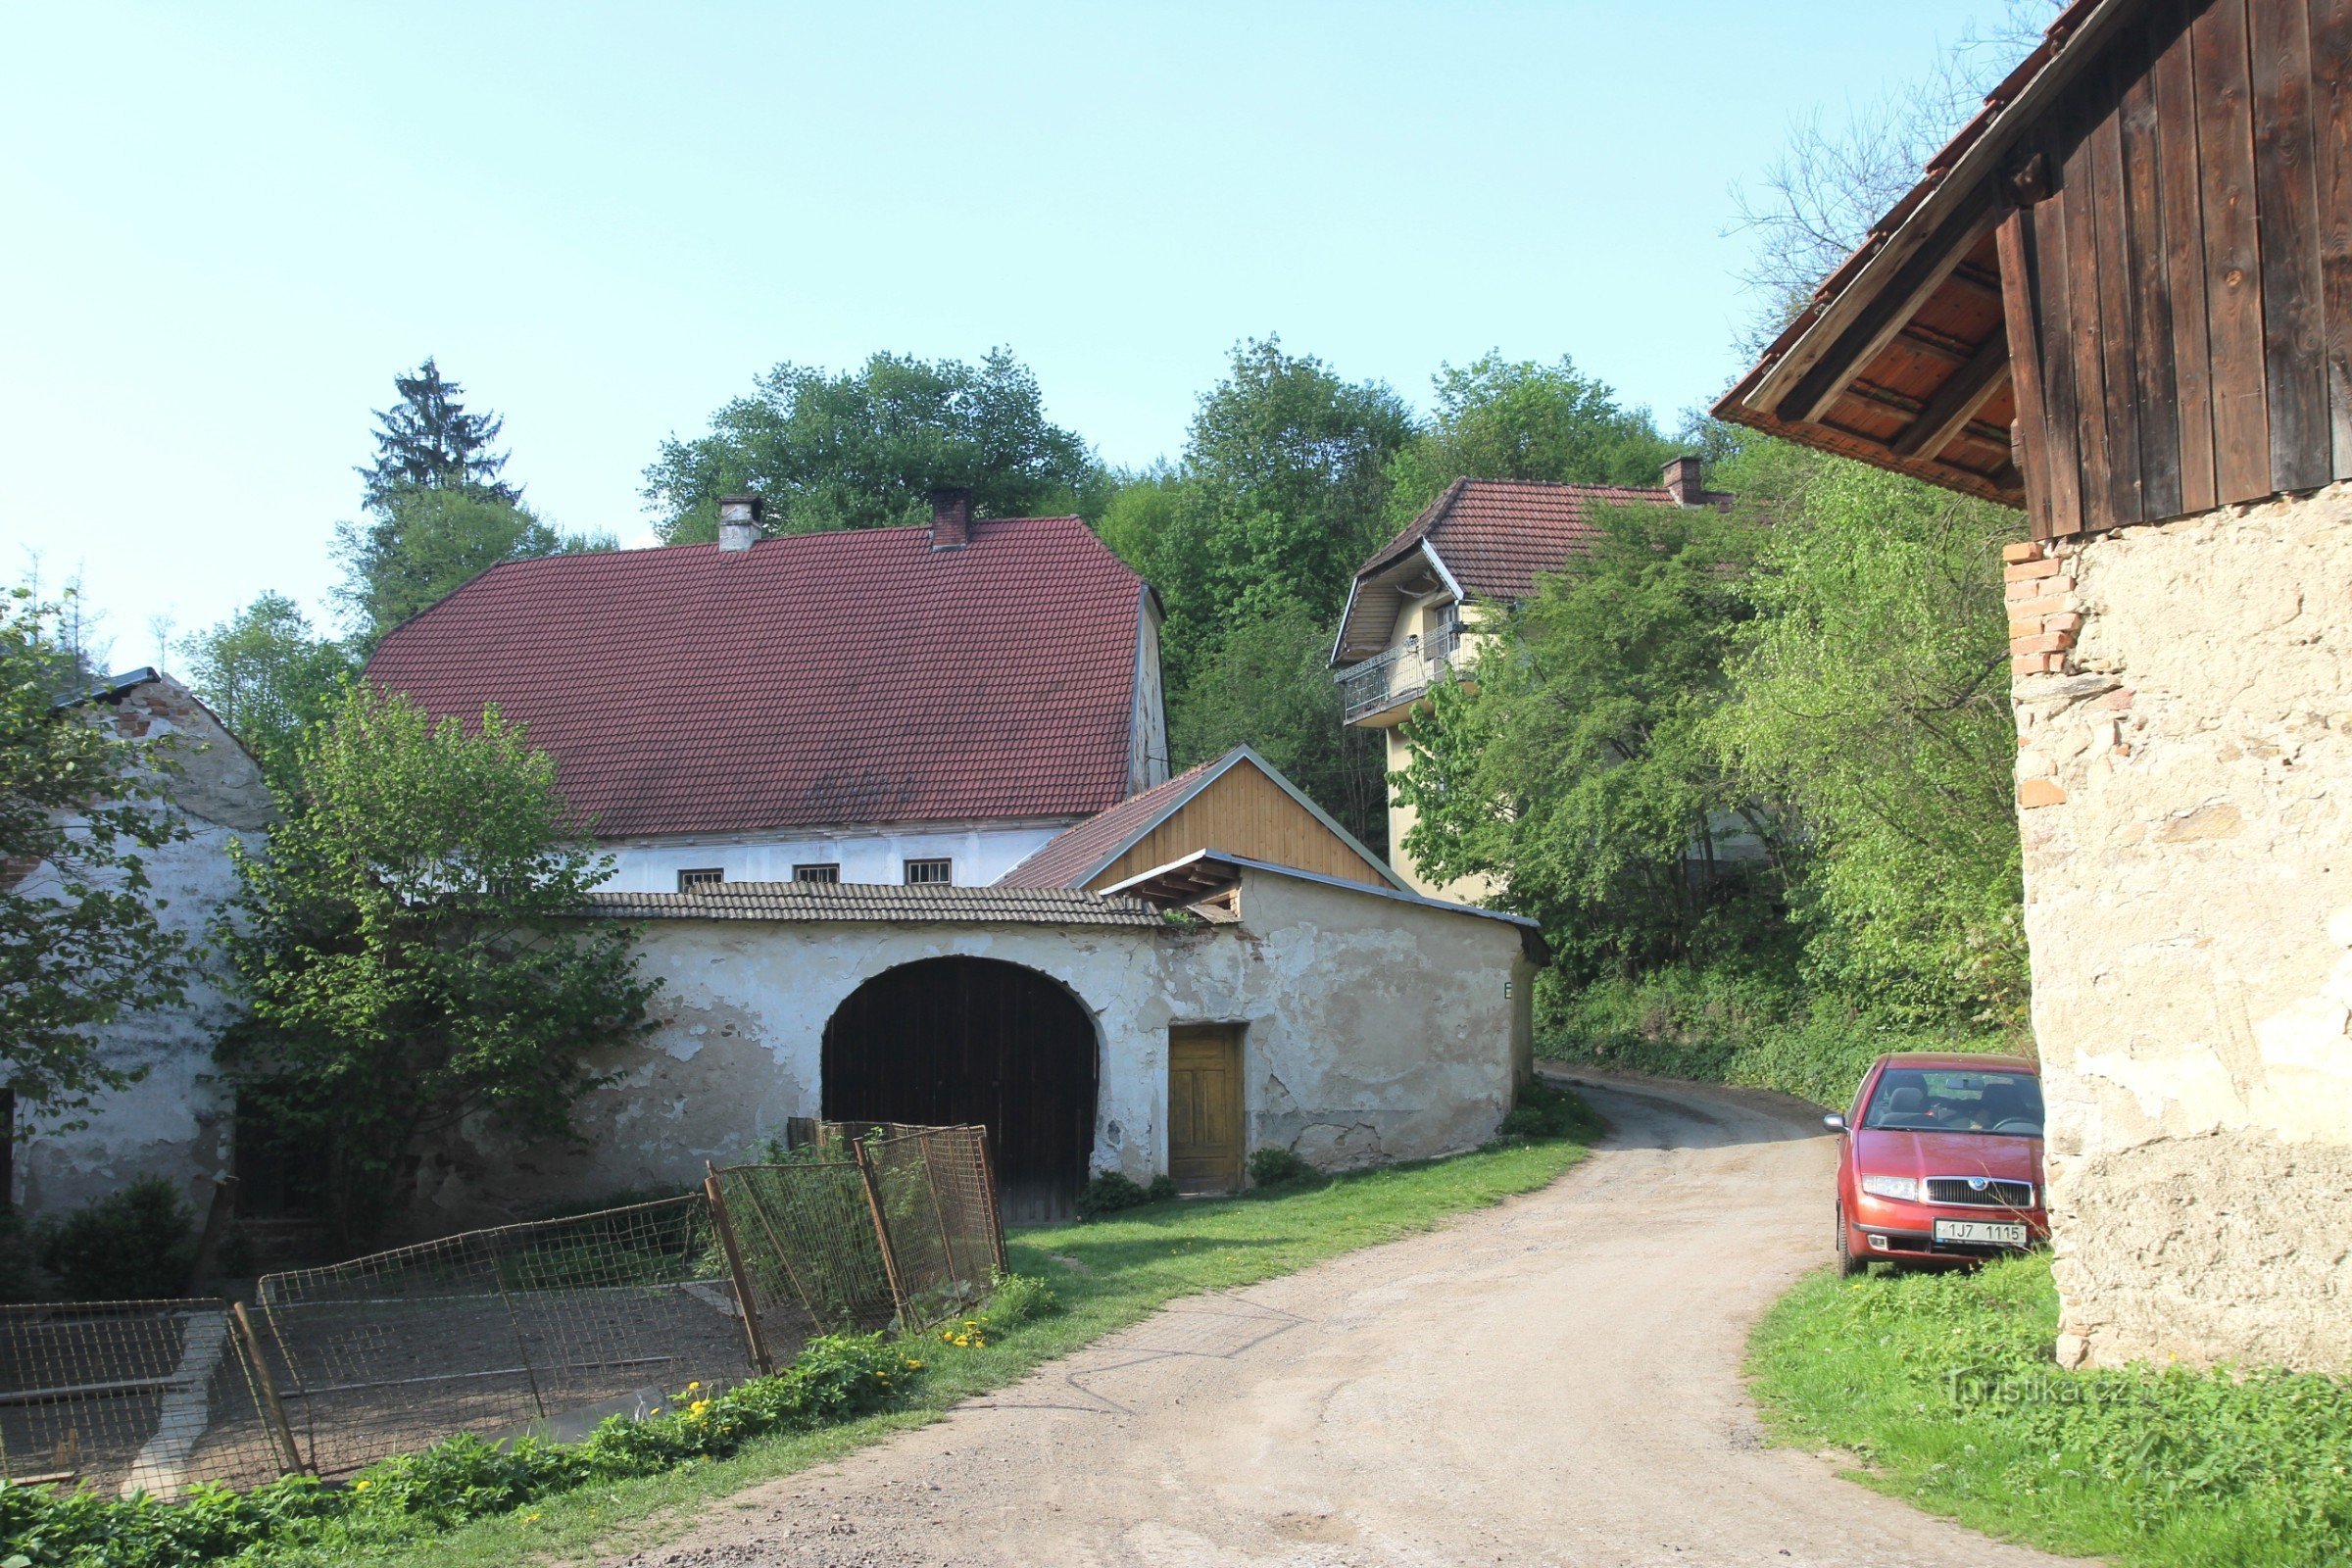 Drumul de acces la solitudinea Falcovy, care continuă spre Chytálek